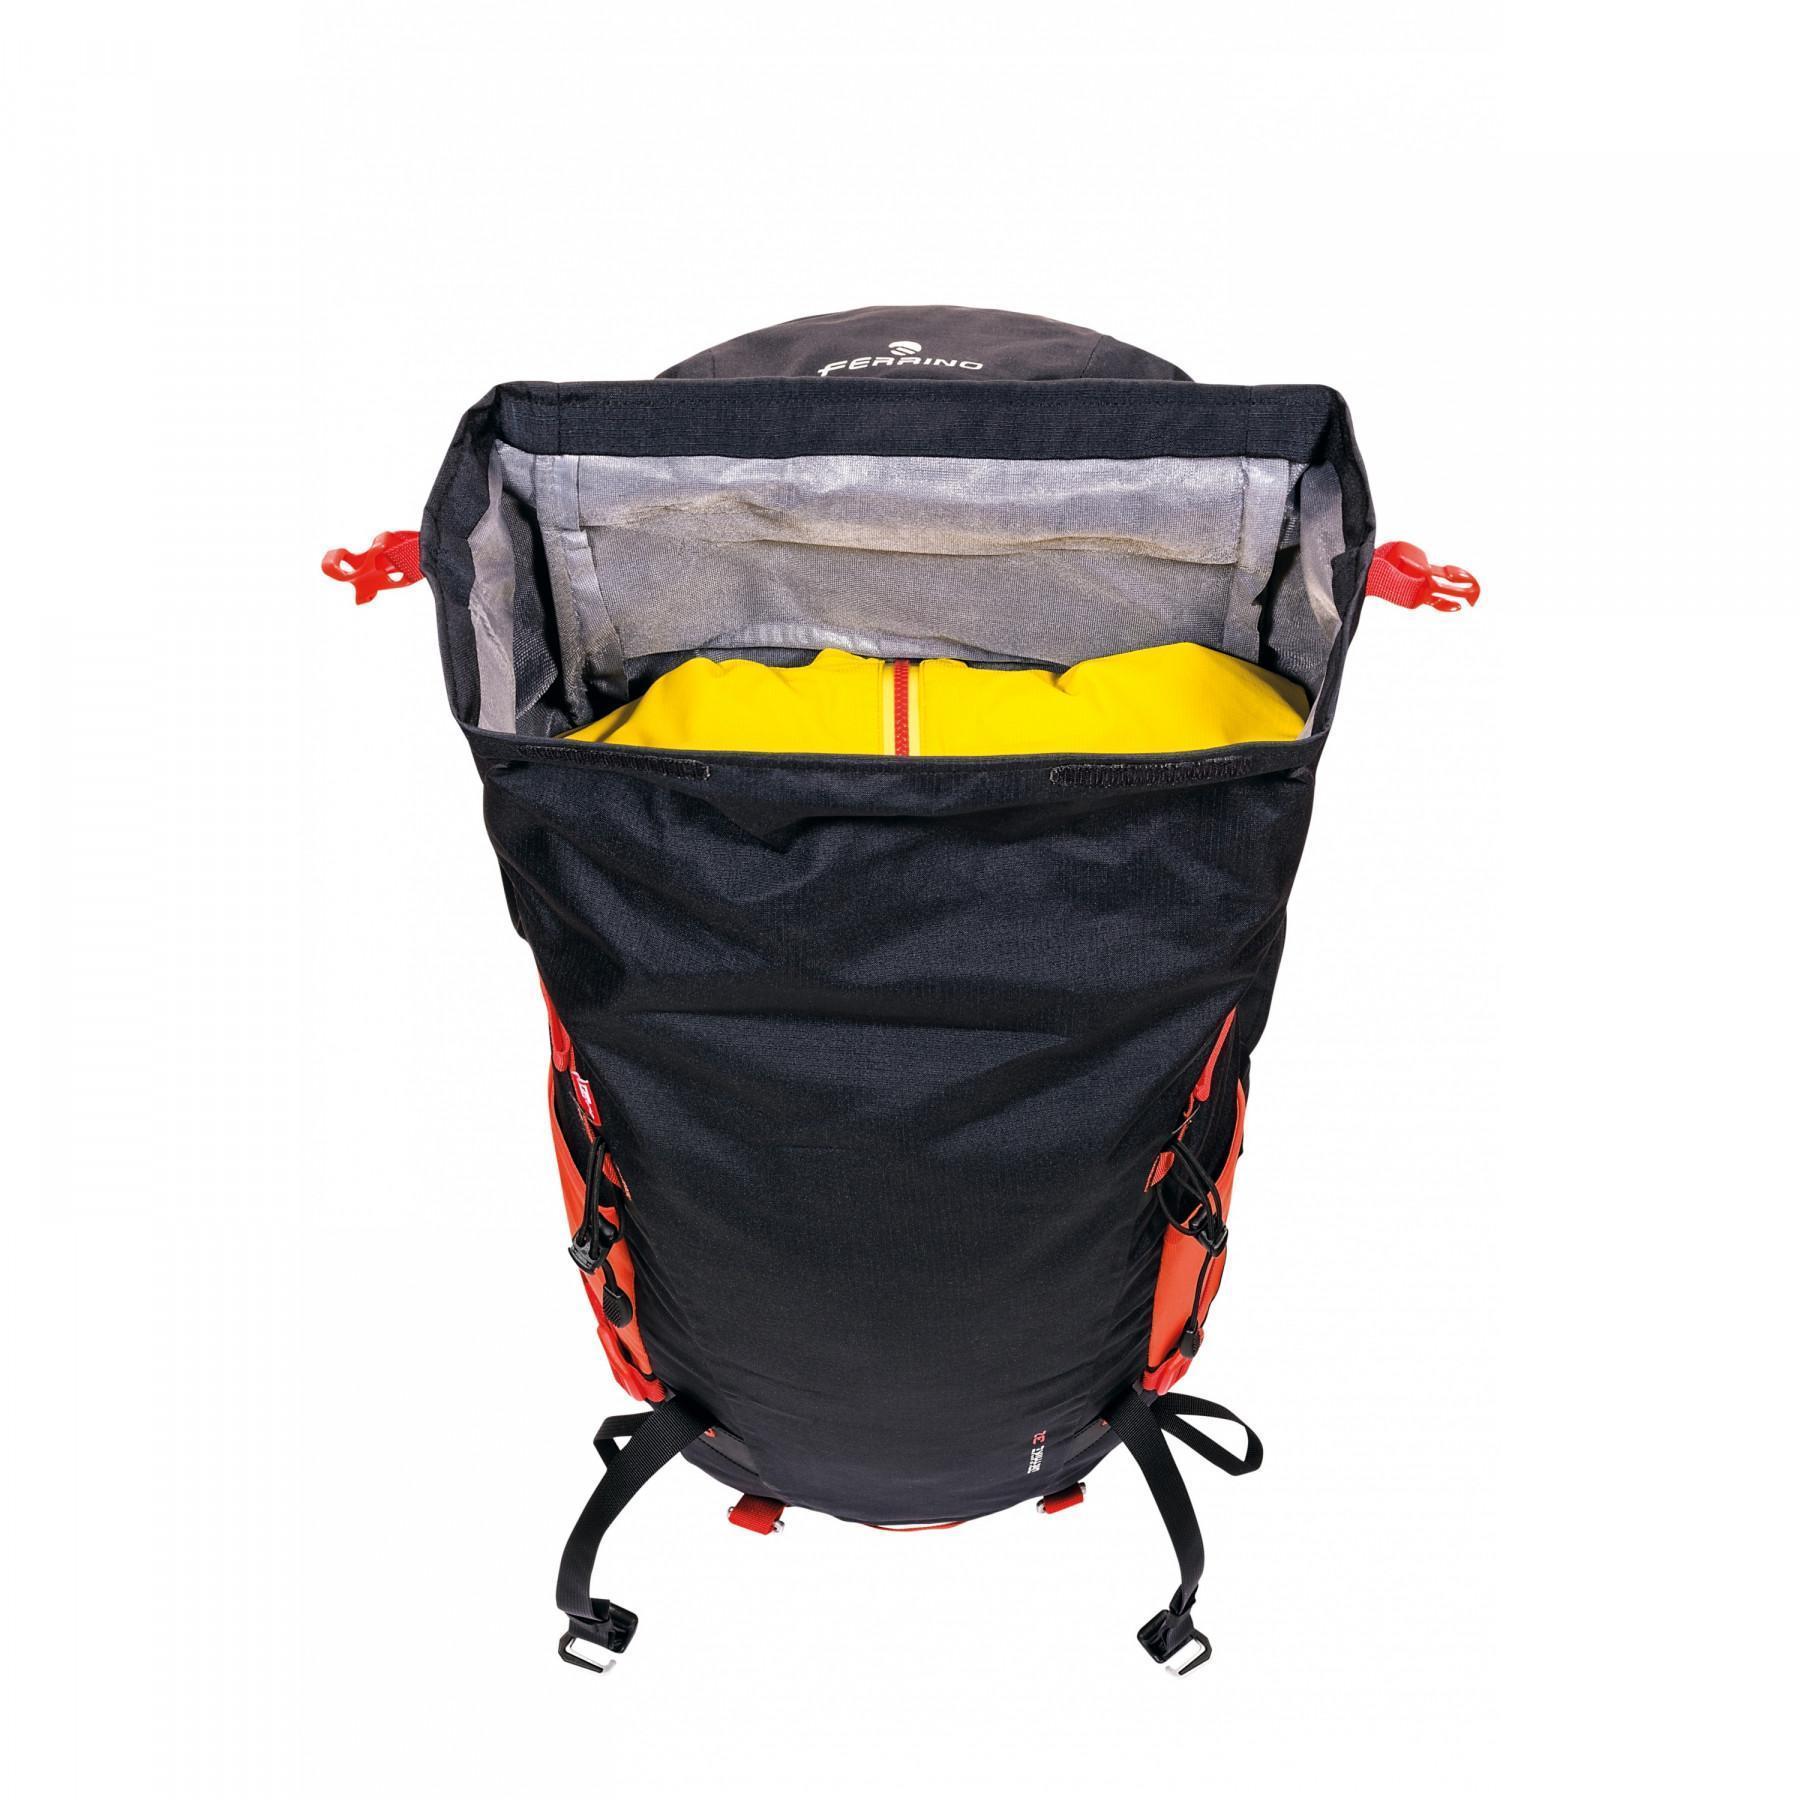 Backpack Ferrino dry-hike 32L